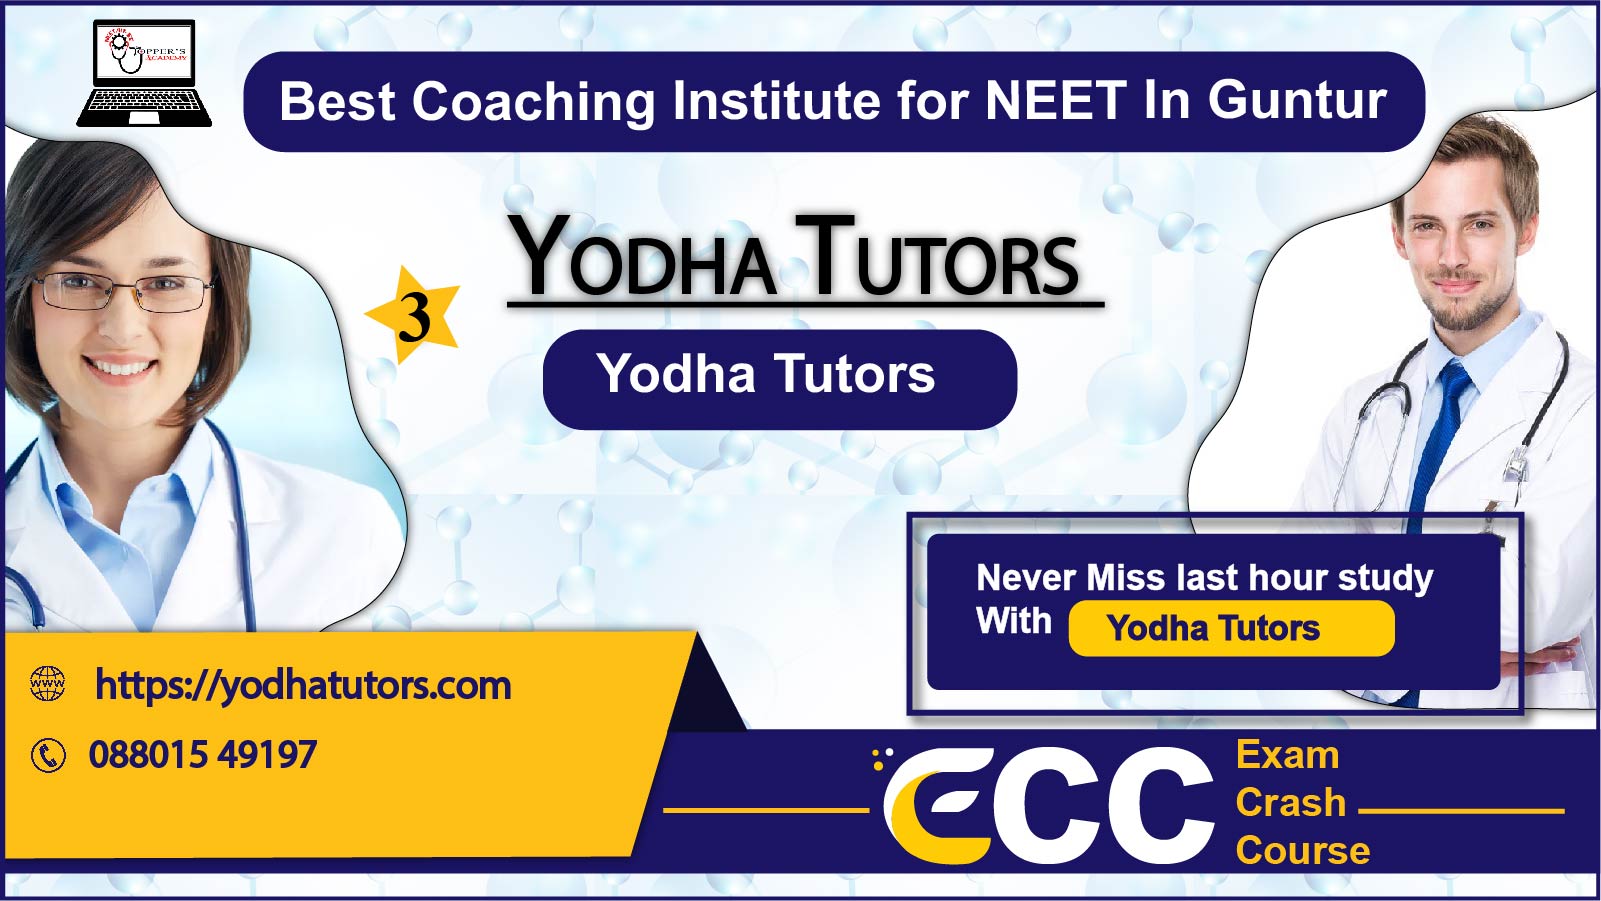 Yodha Tutors NEET Coaching in Guntur